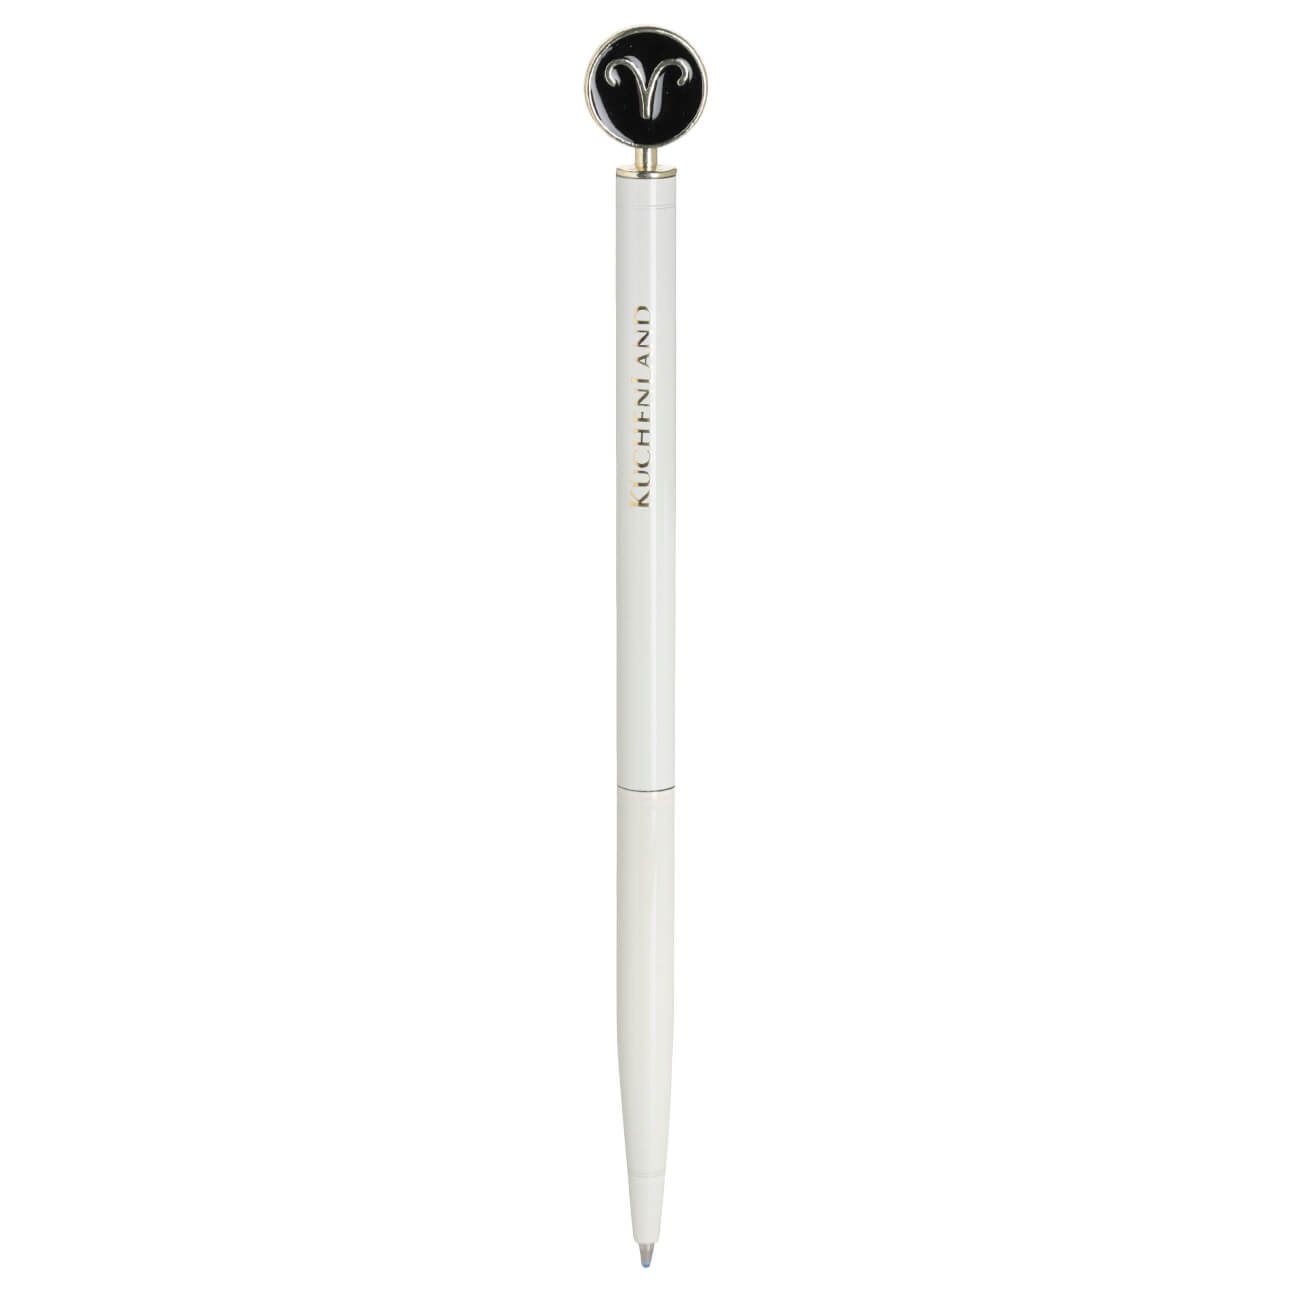 Ручка шариковая, 15 см, с фигуркой, сталь, молочно-золотистая, Овен, Zodiac ручка doorlock